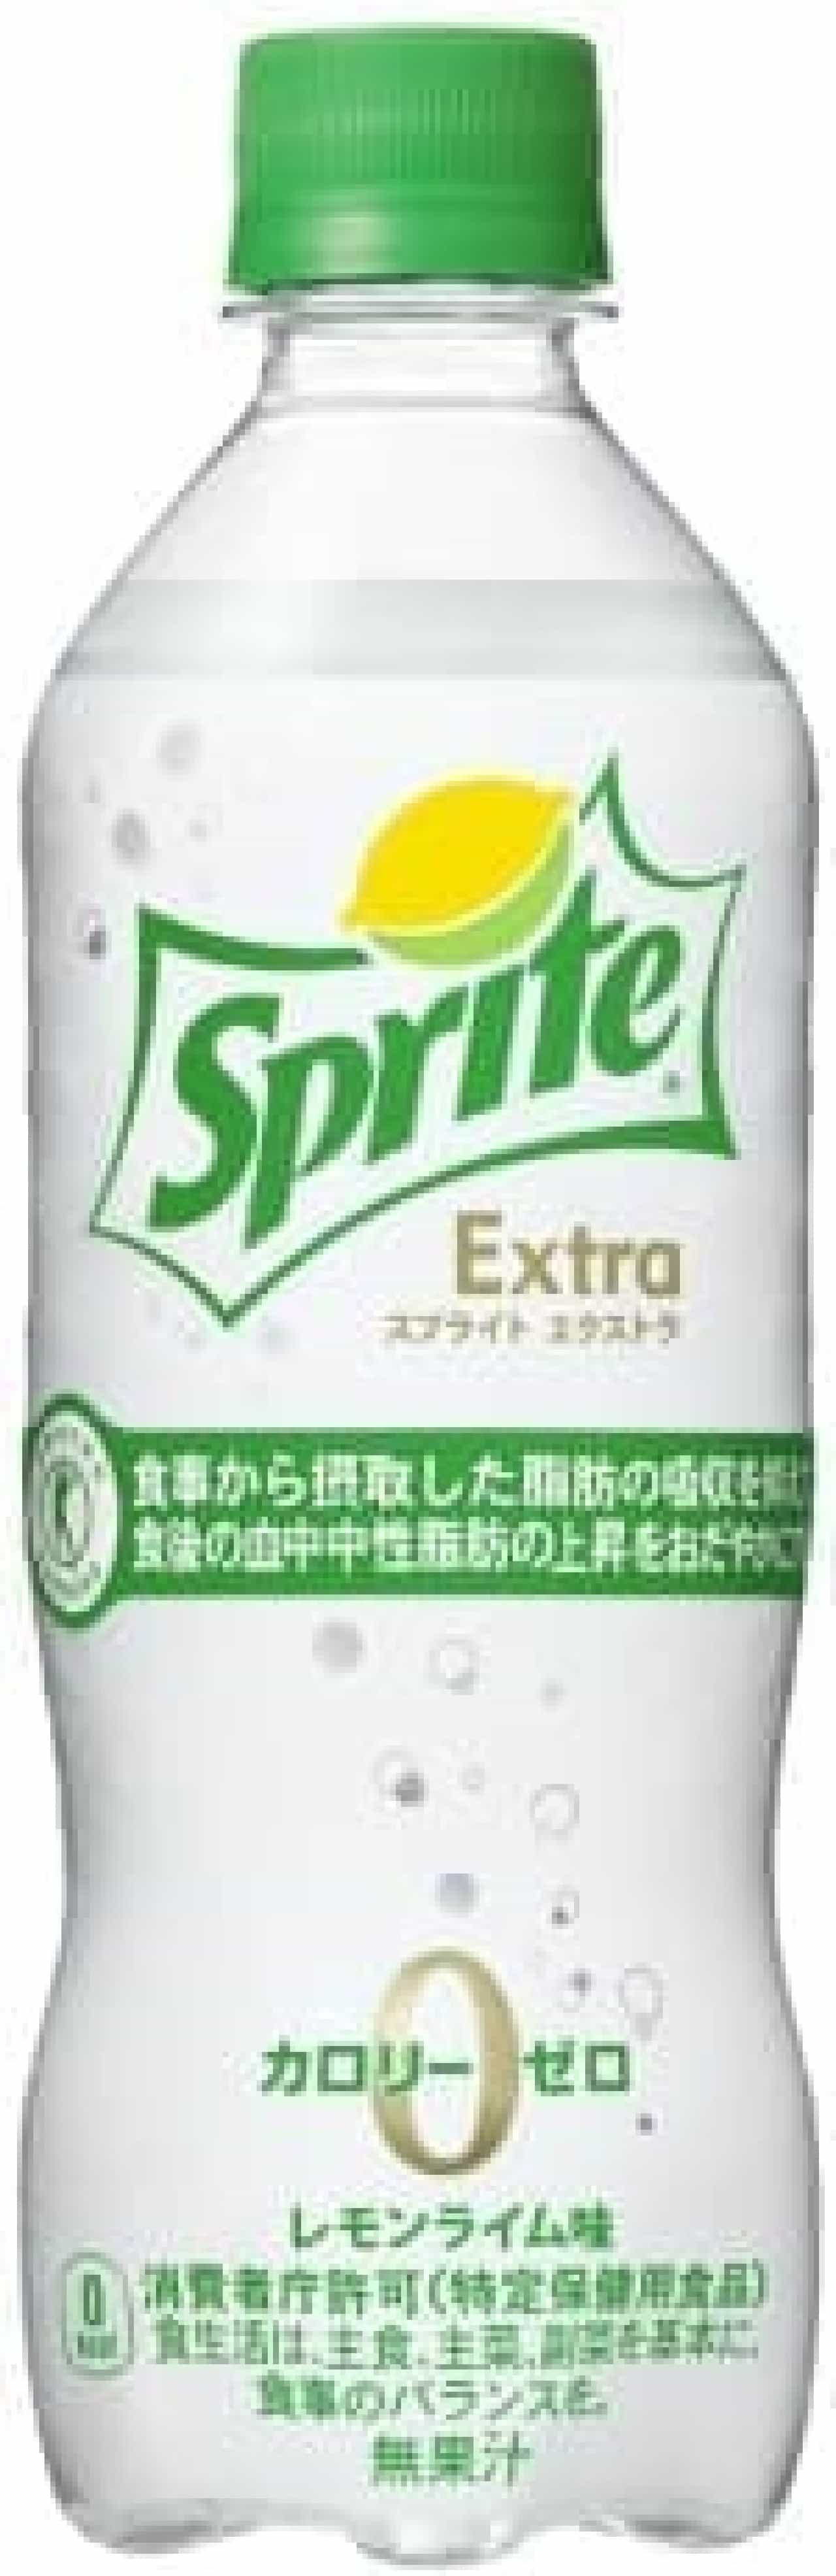 Coca-Cola system "Sprite Extra"